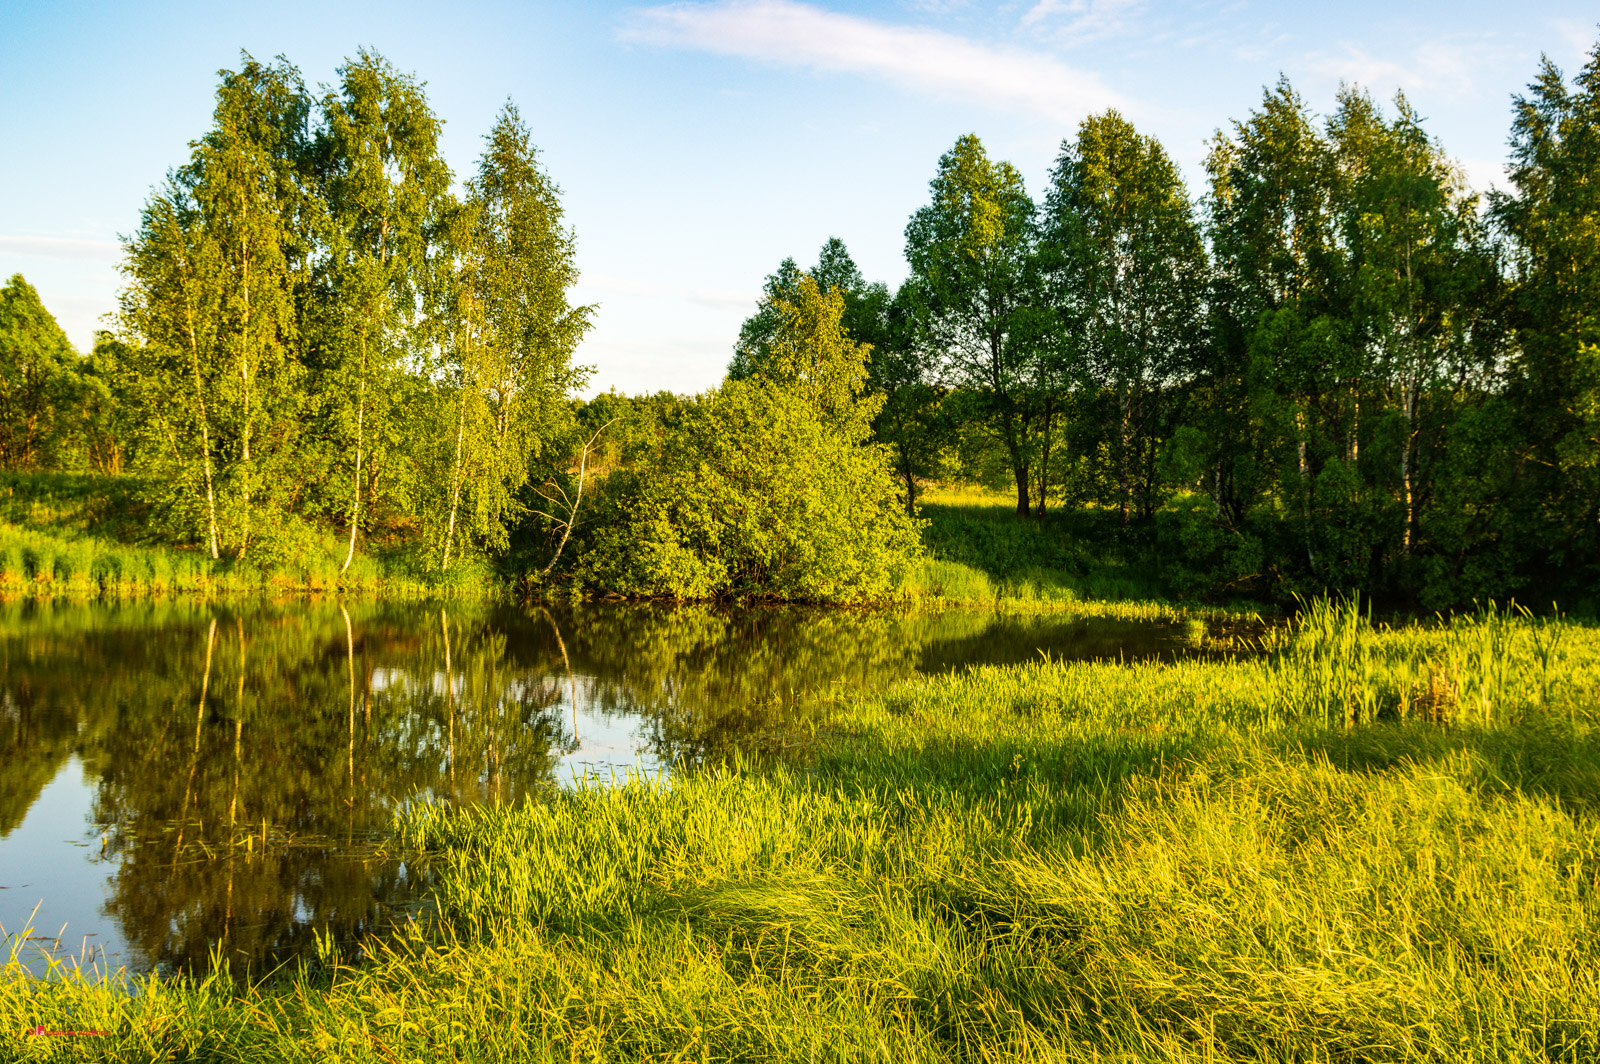 Пруд в Подмосковье / Pond in Moscow region